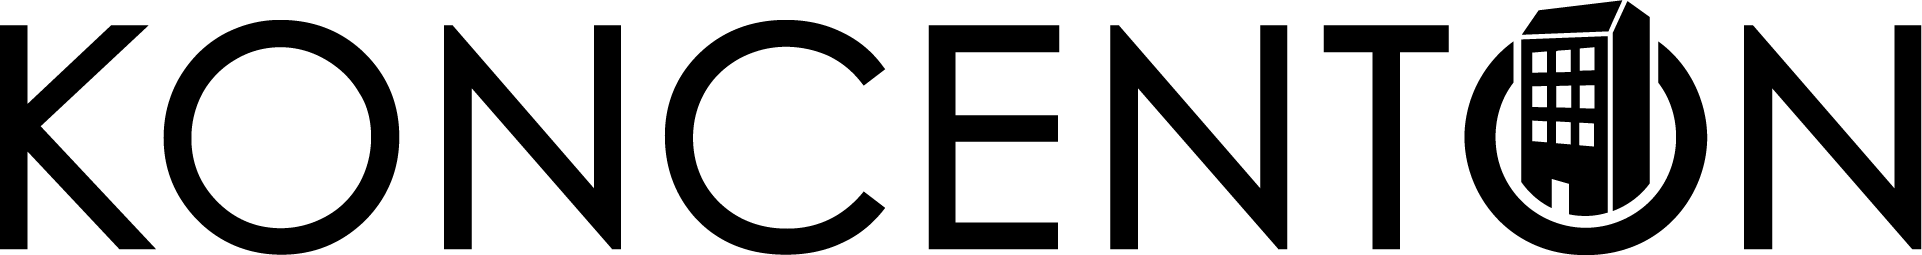 koncenton-logo-black.png